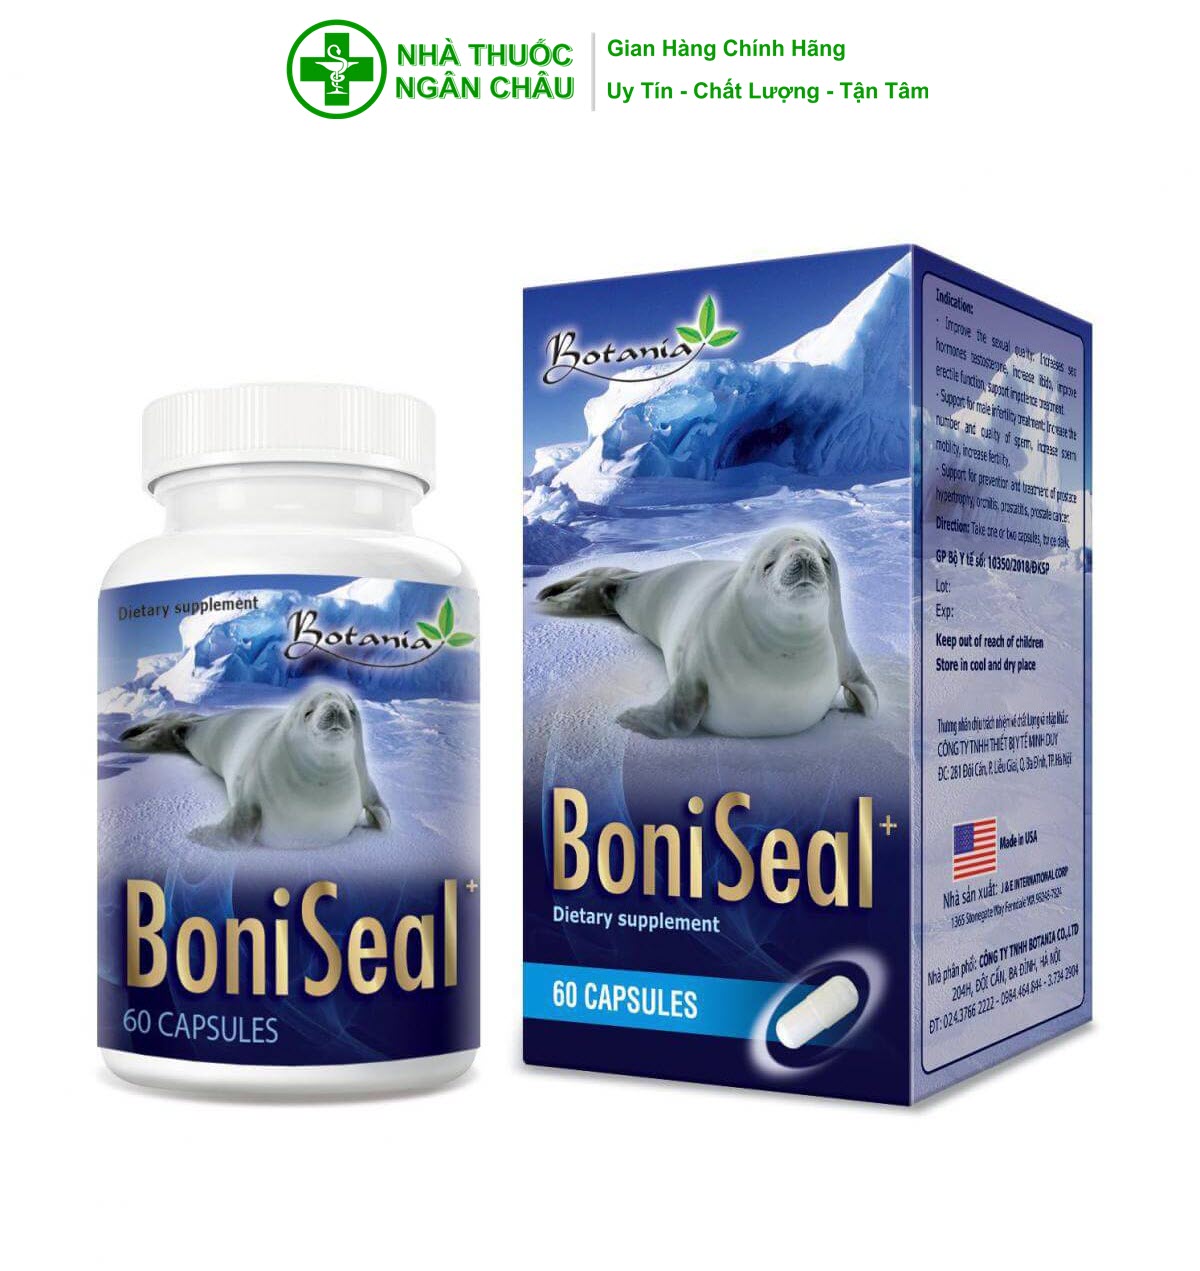 Viên Uống BoniSeal+ BOTANIA - Made In USA - Hỗ Trợ Bổ Thận, Kích Thích Cơ Thể Tăng Tiết Testosterol, Tăng Cường Sinh Lực Nam Giới, Nâng Cao Sức Khỏe